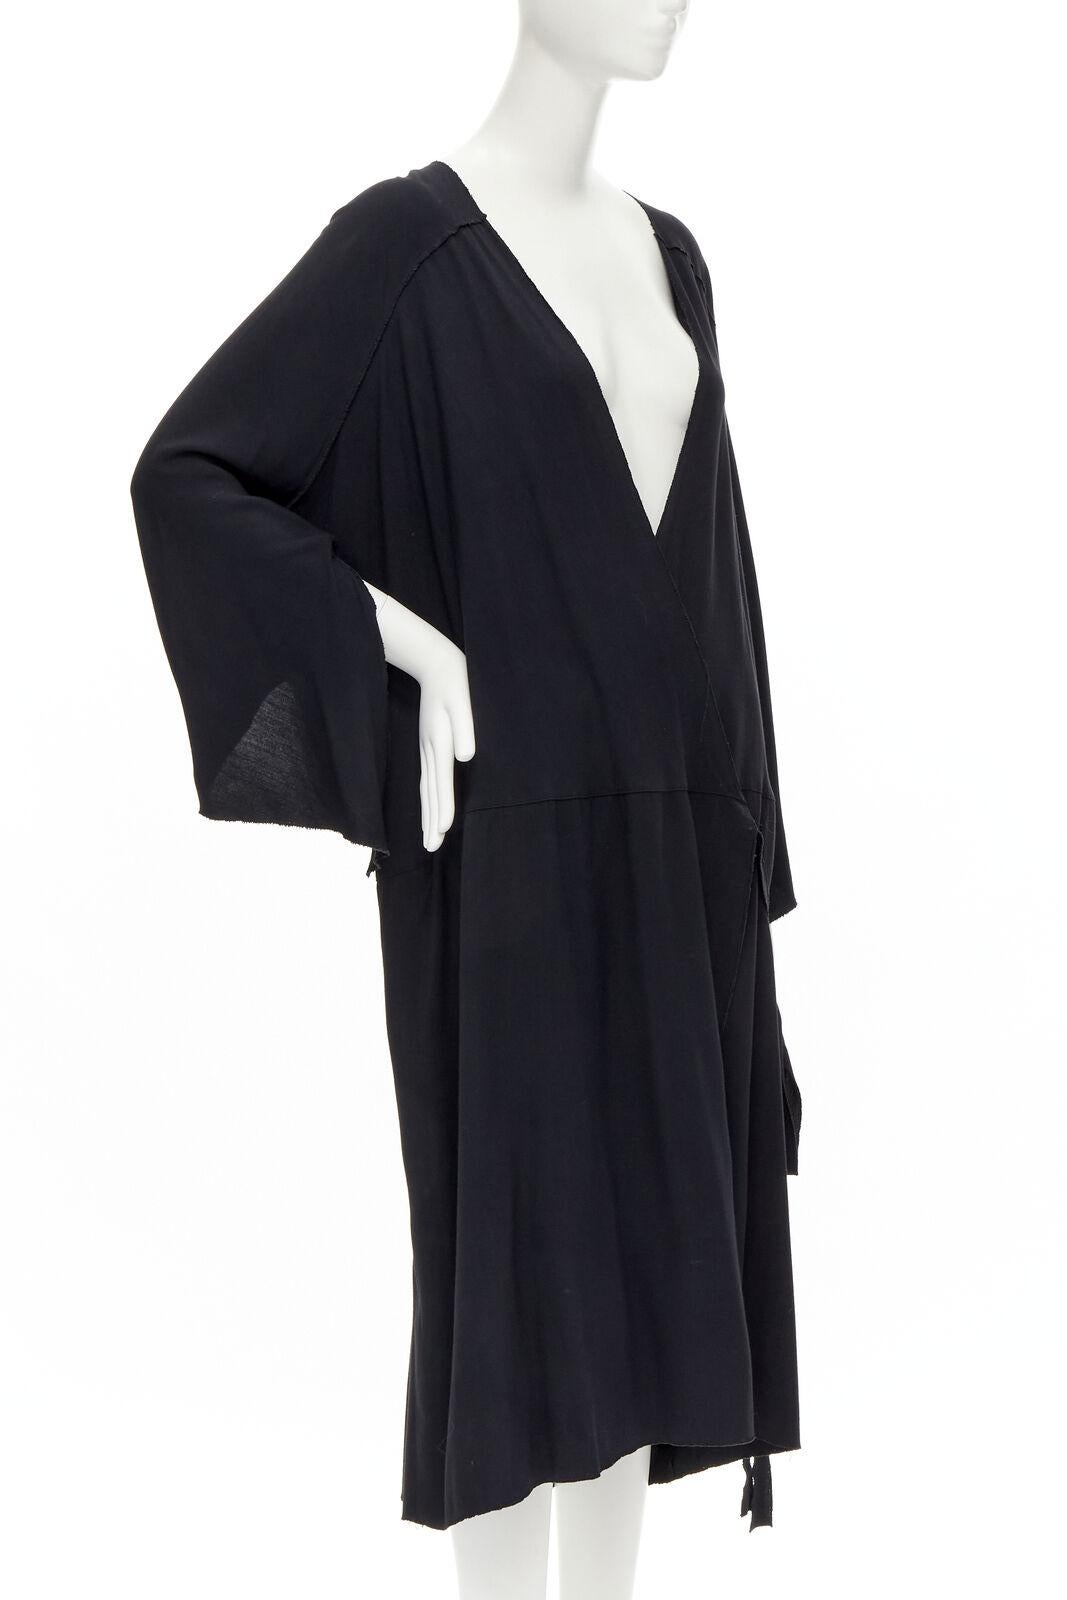 Noir COMME DES GARCONS - Robe kimono asymétrique noire, vintage, années 1980 en vente